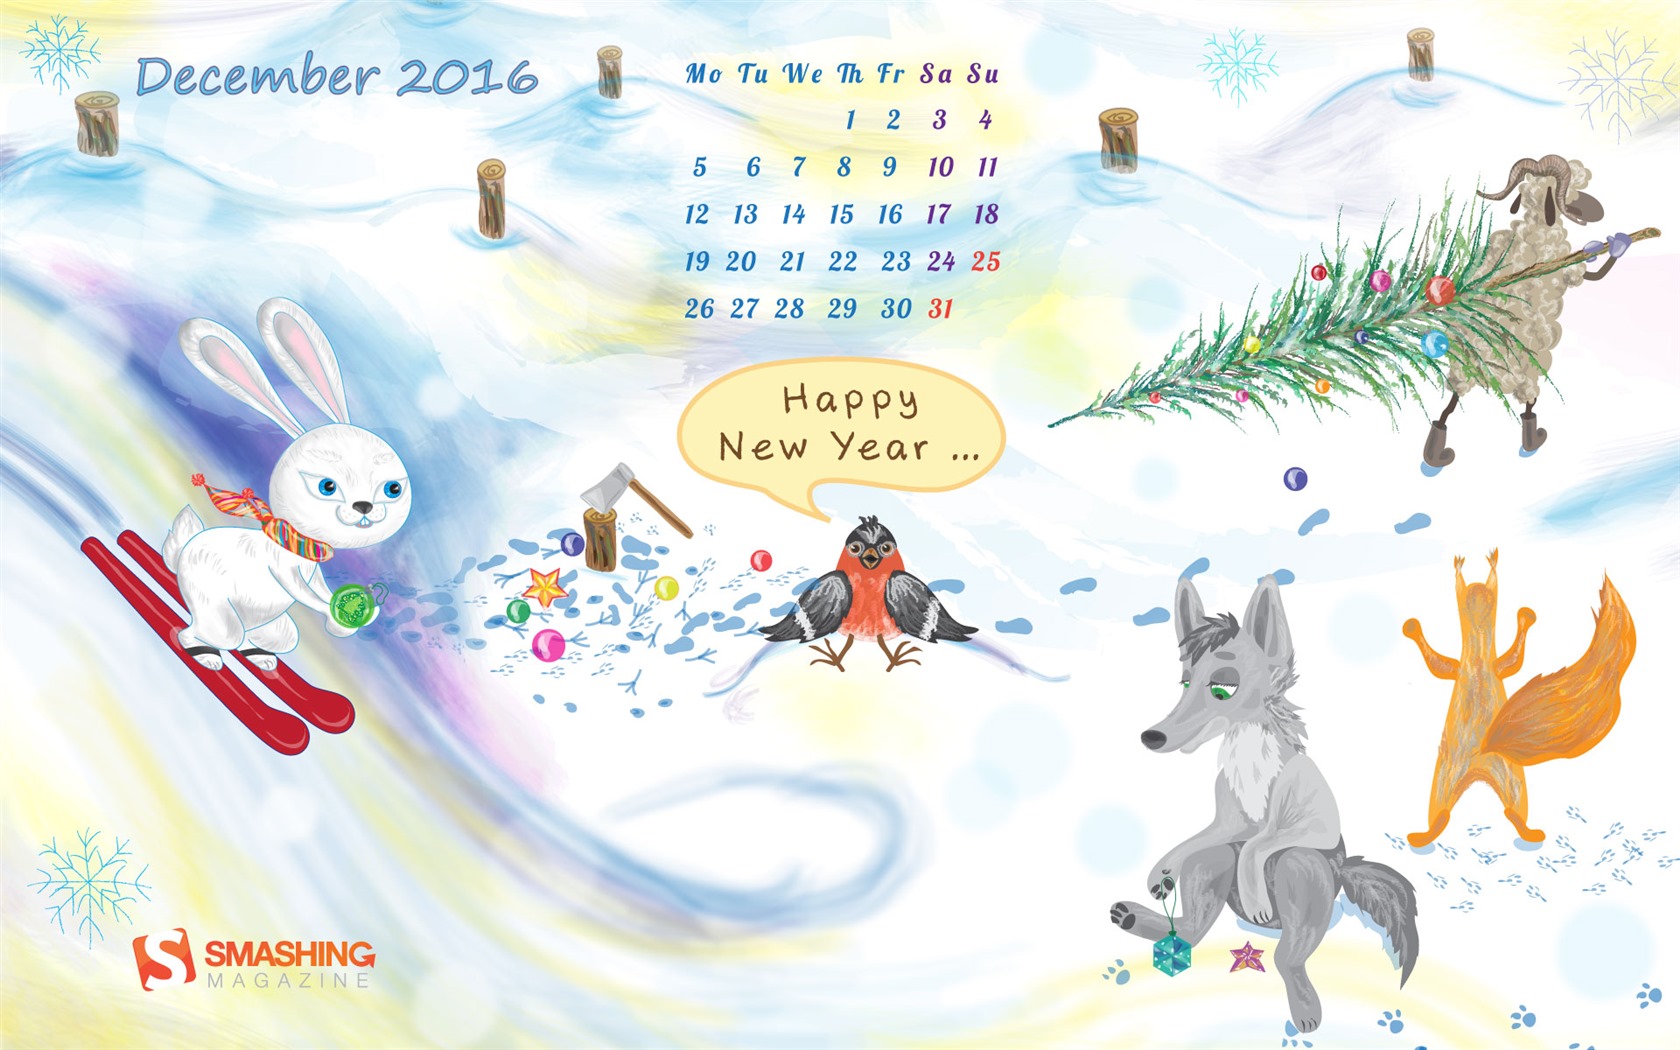 December 2016 Christmas theme calendar wallpaper (1) #27 - 1680x1050